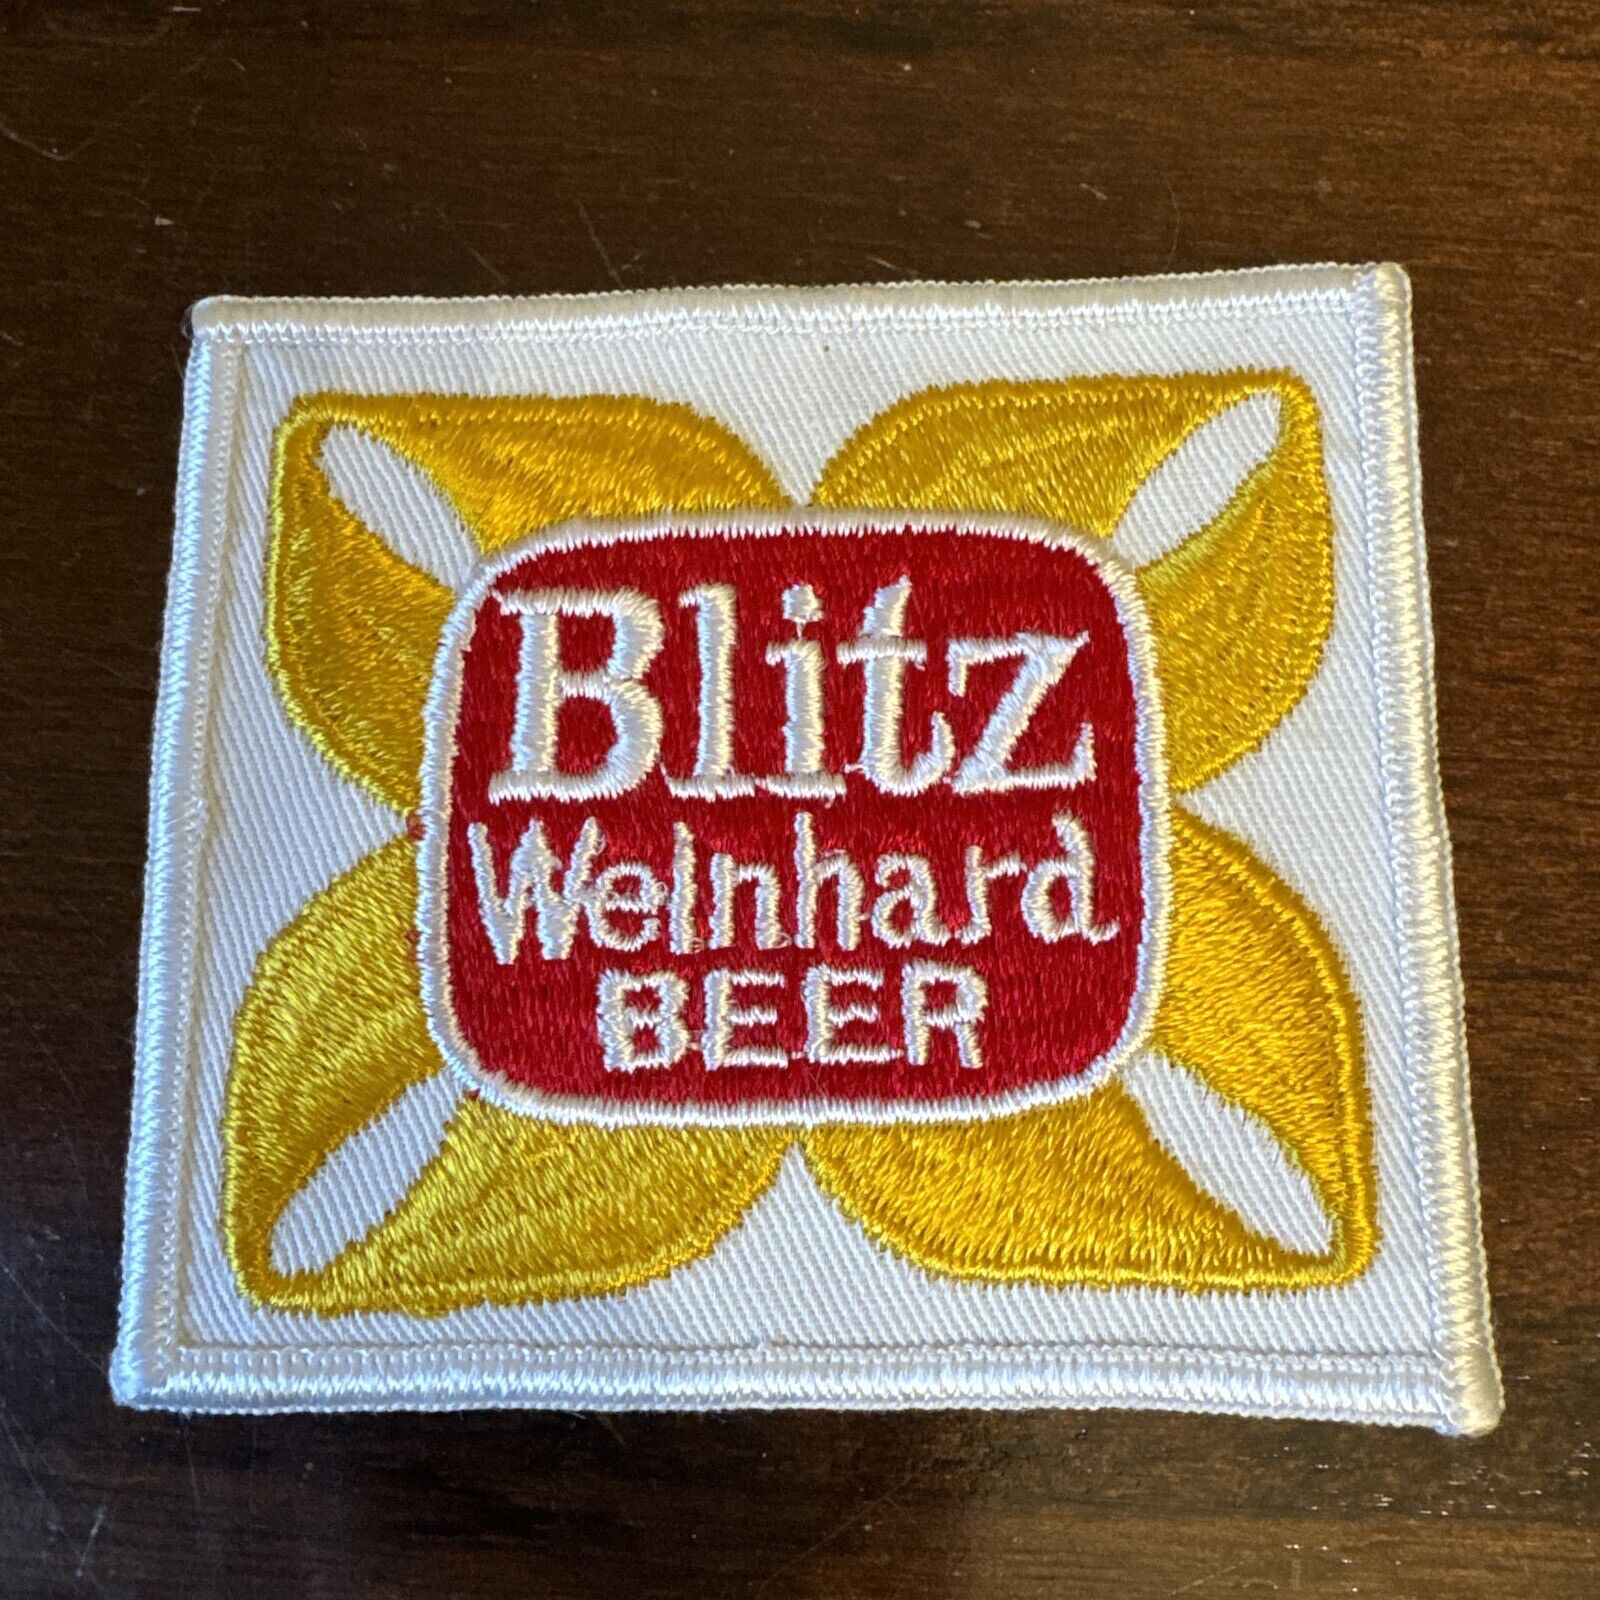 (VTG) Blitz Welnhard Beer Patch for Shirt Jacket Hat Beer